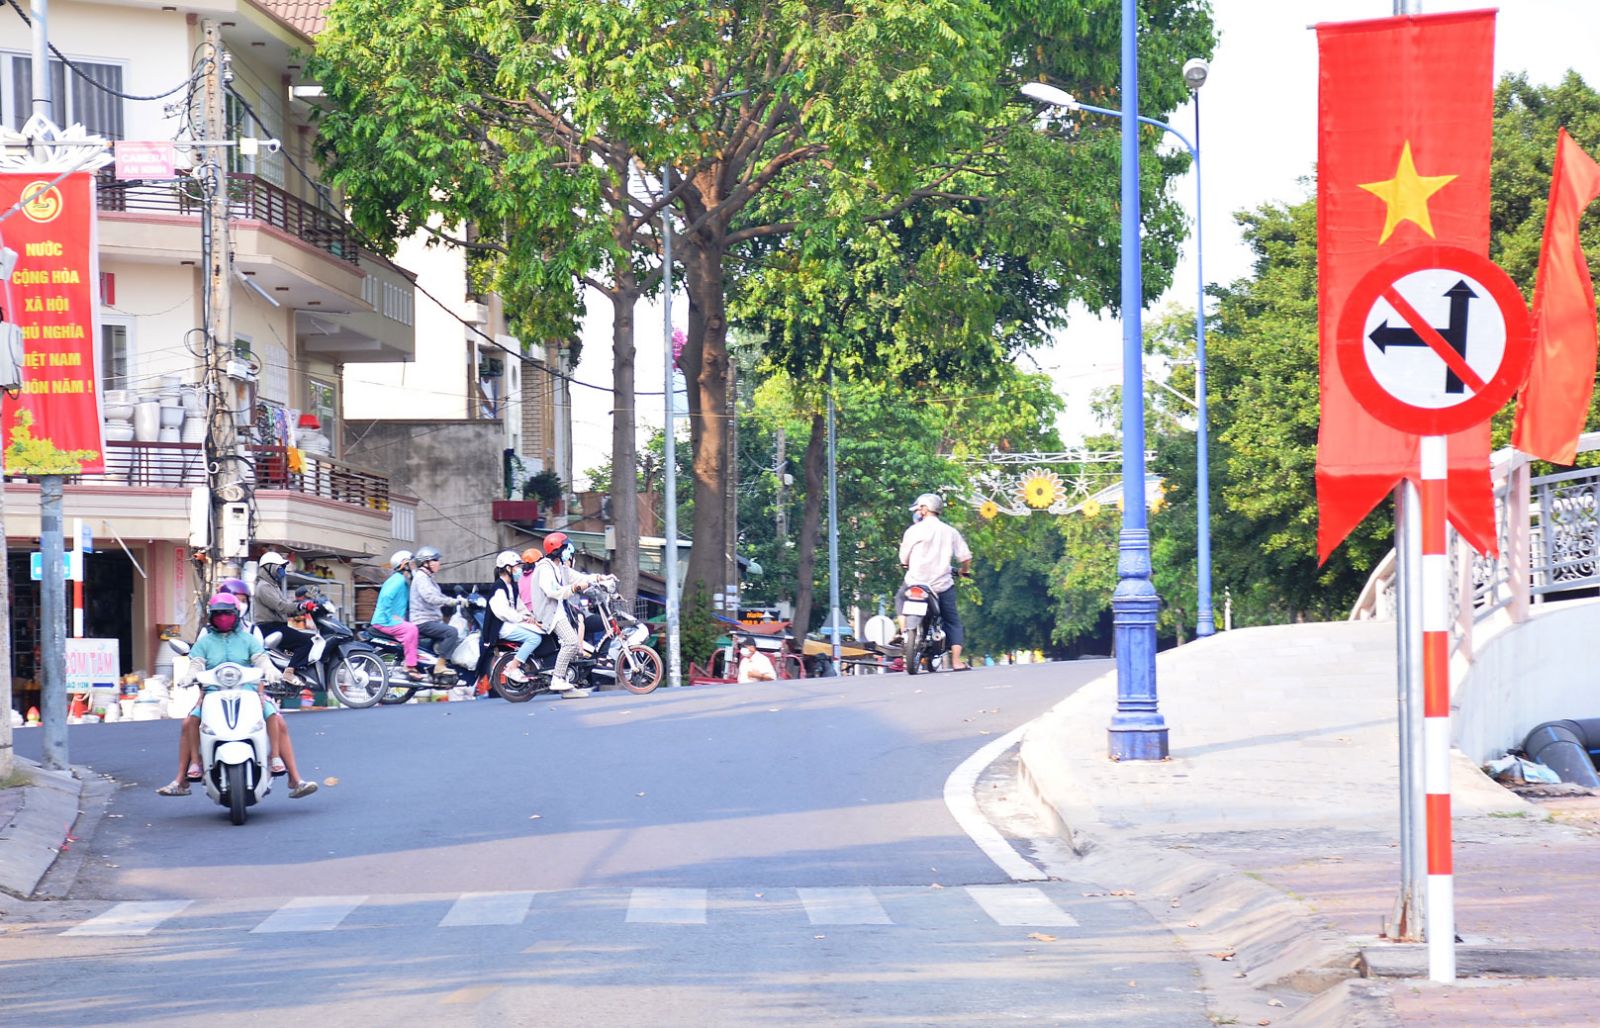 Mặc dù có biển cấm nhưng người đàn ông cứ băng thẳng tại ngã tư đường Bạch Đằng - Nguyễn Trung Trực (chân cầu Đúc) gây nguy hiểm cho những người lưu thông trên đường Nguyễn Trung Trực